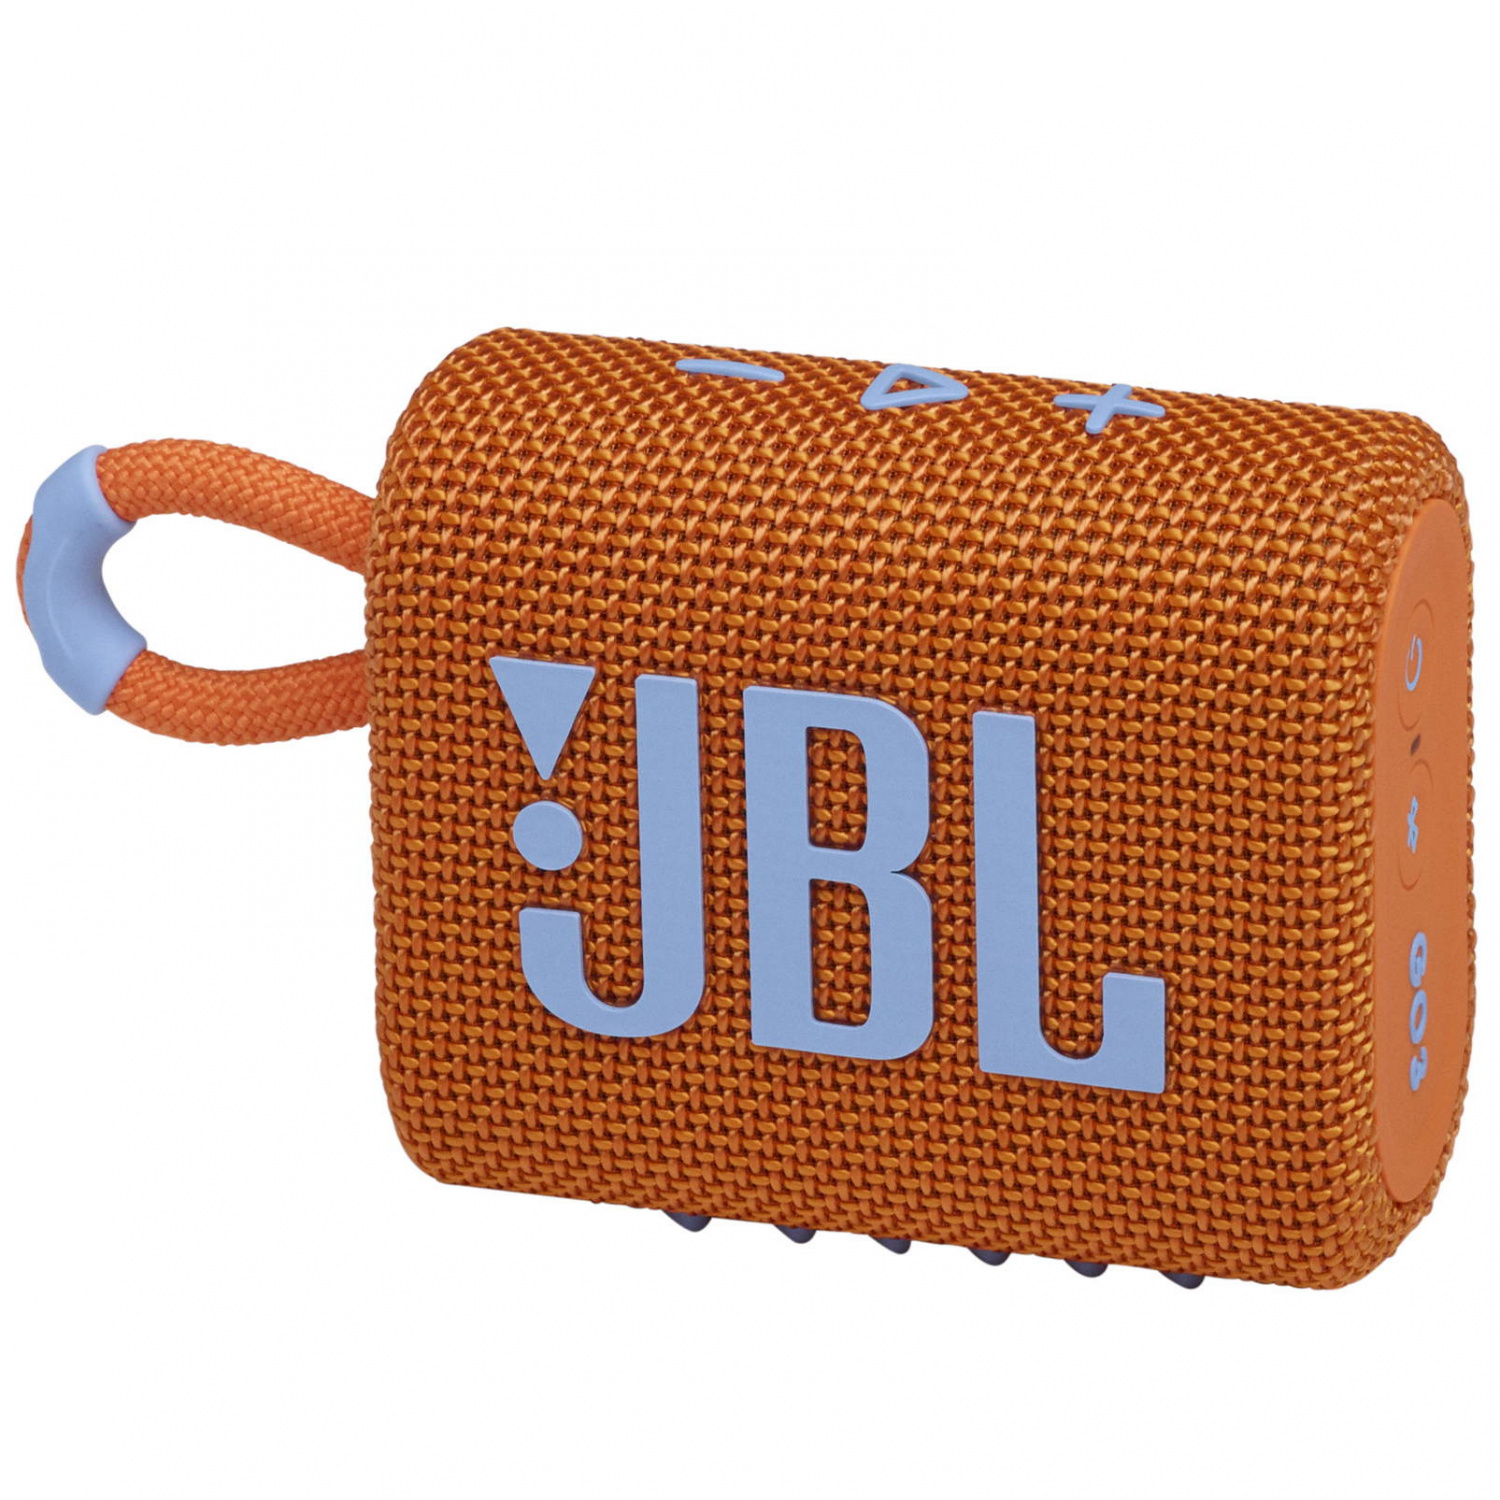 Купить портативная колонка jbl go 3 orange JBL в официальном магазине Apple, Samsung, Xiaomi. iPixel.ru Купить, заказ, кредит, рассрочка, отзывы,  характеристики, цена,  фотографии, в подарок.